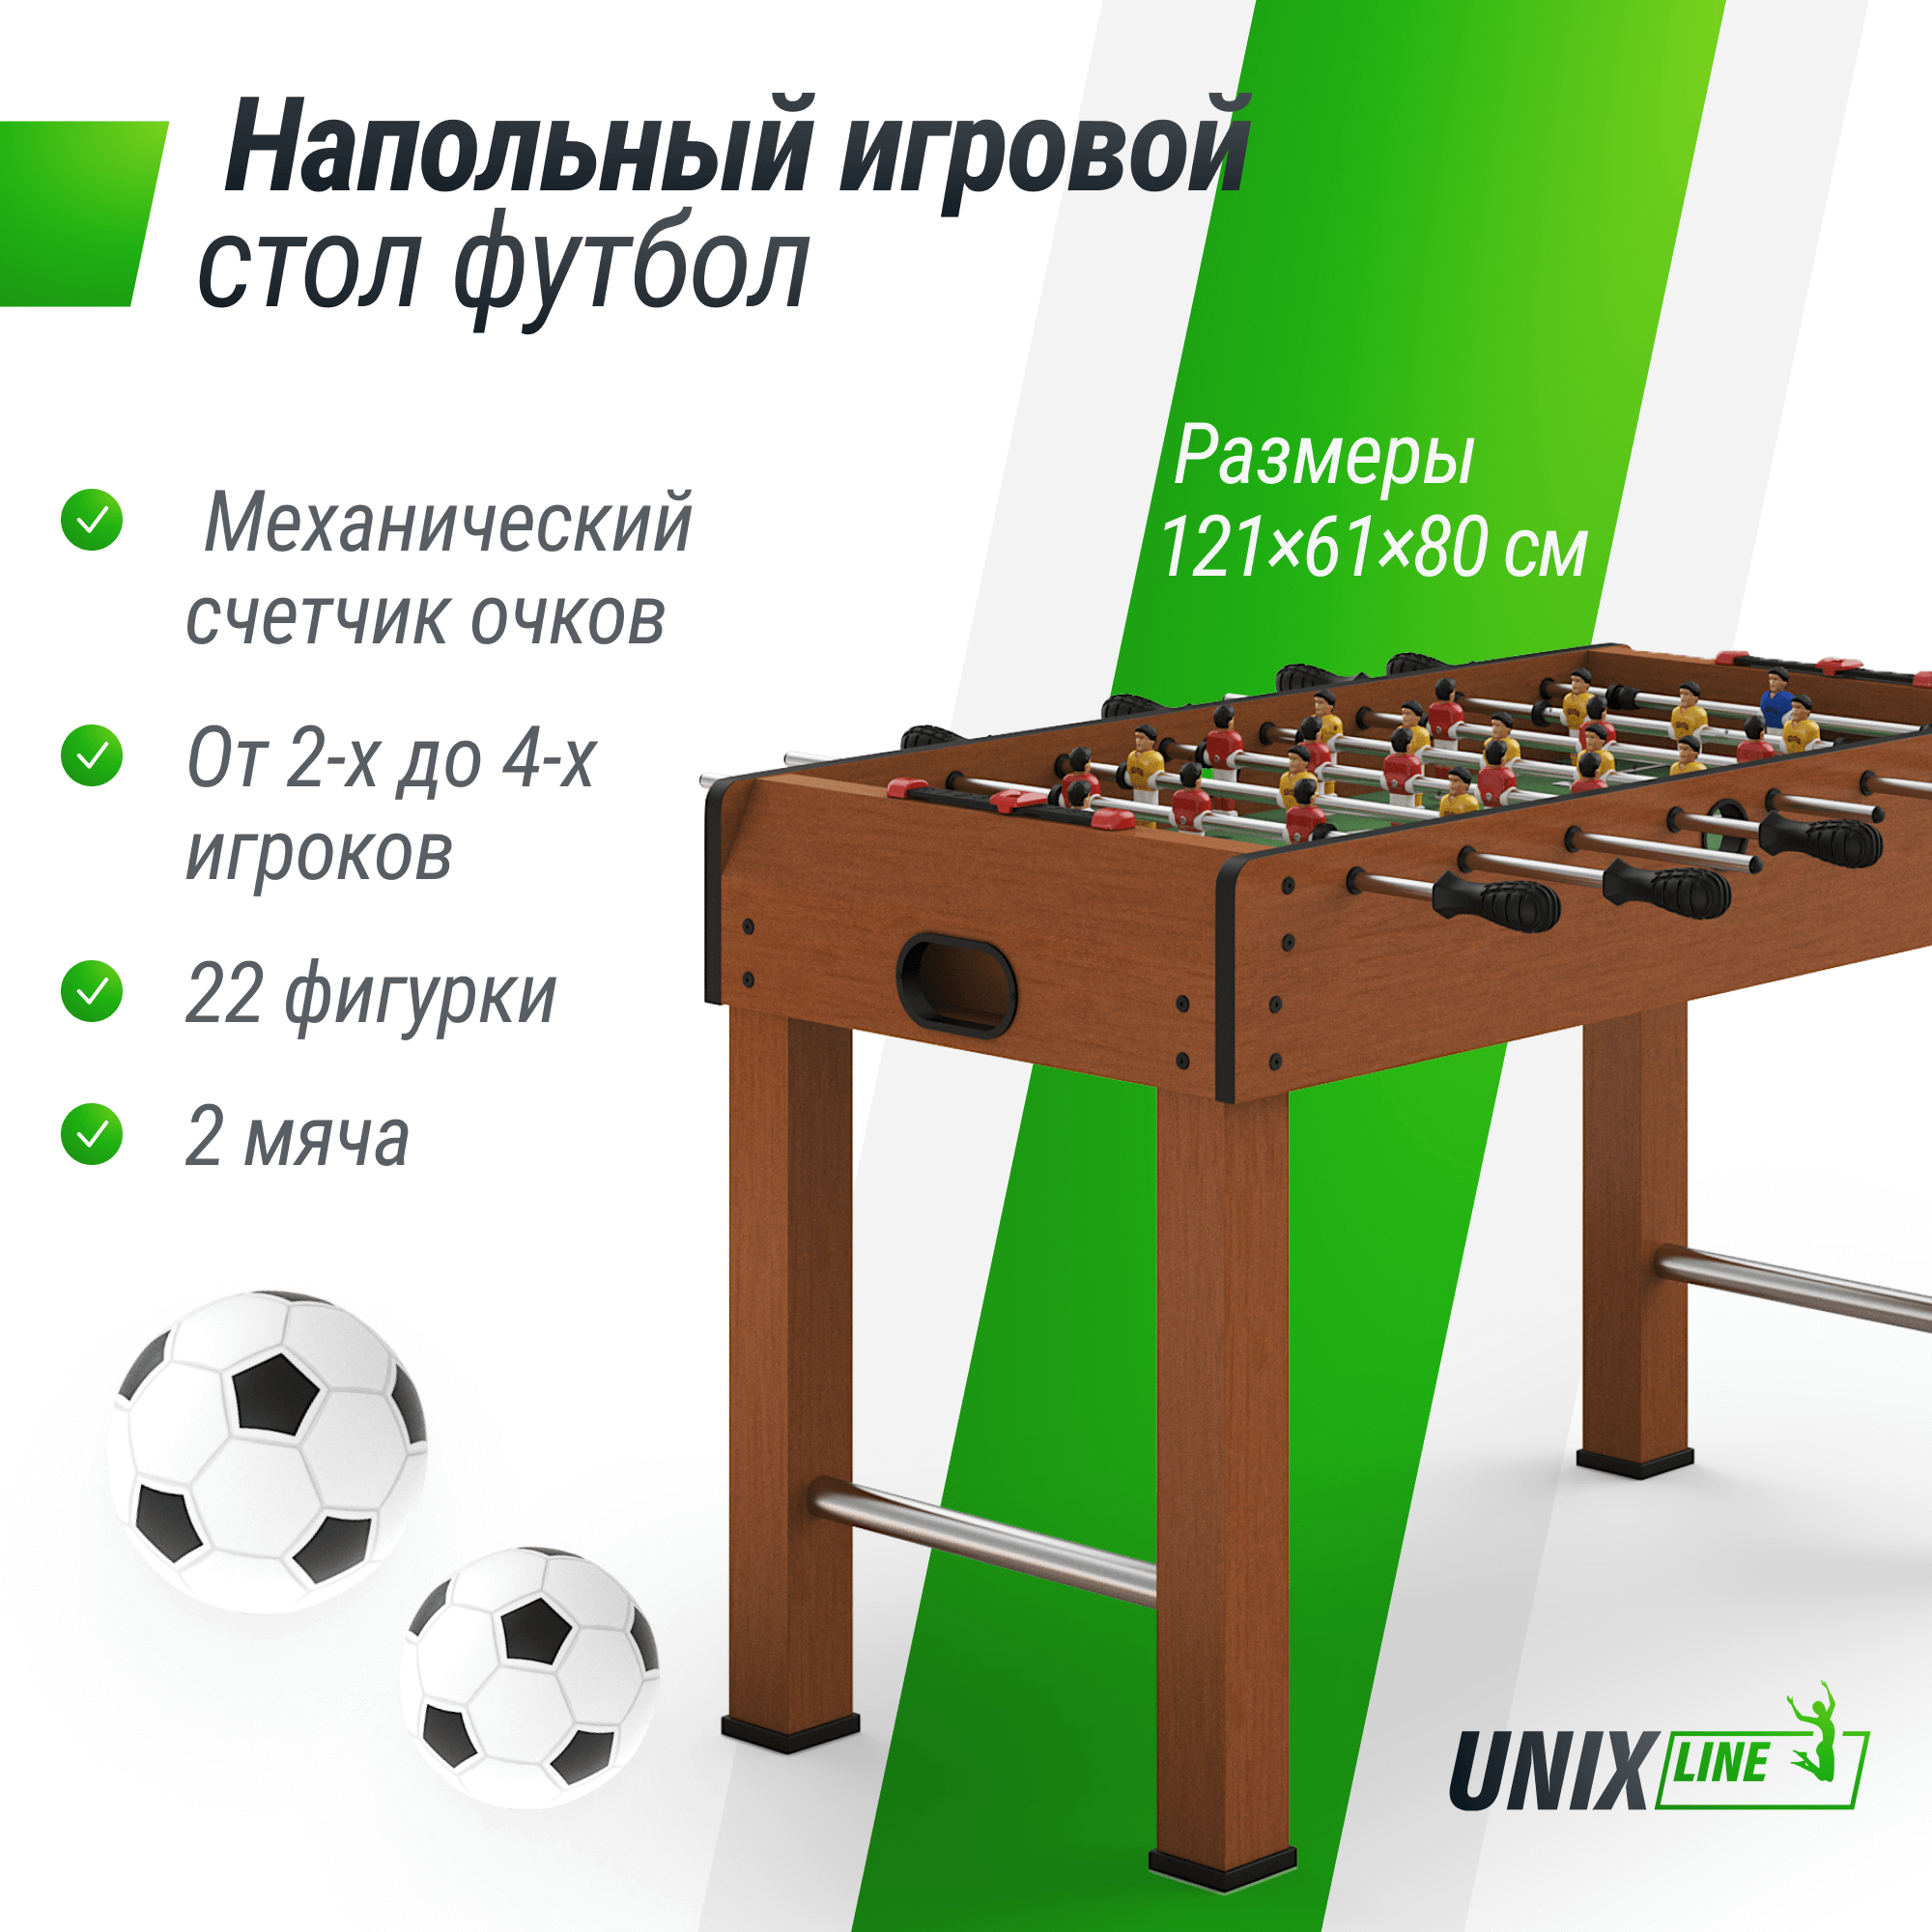 Игровой стол UNIX Line Футбол Кикер 121х61 cм, настольная игра для детей и взрослых